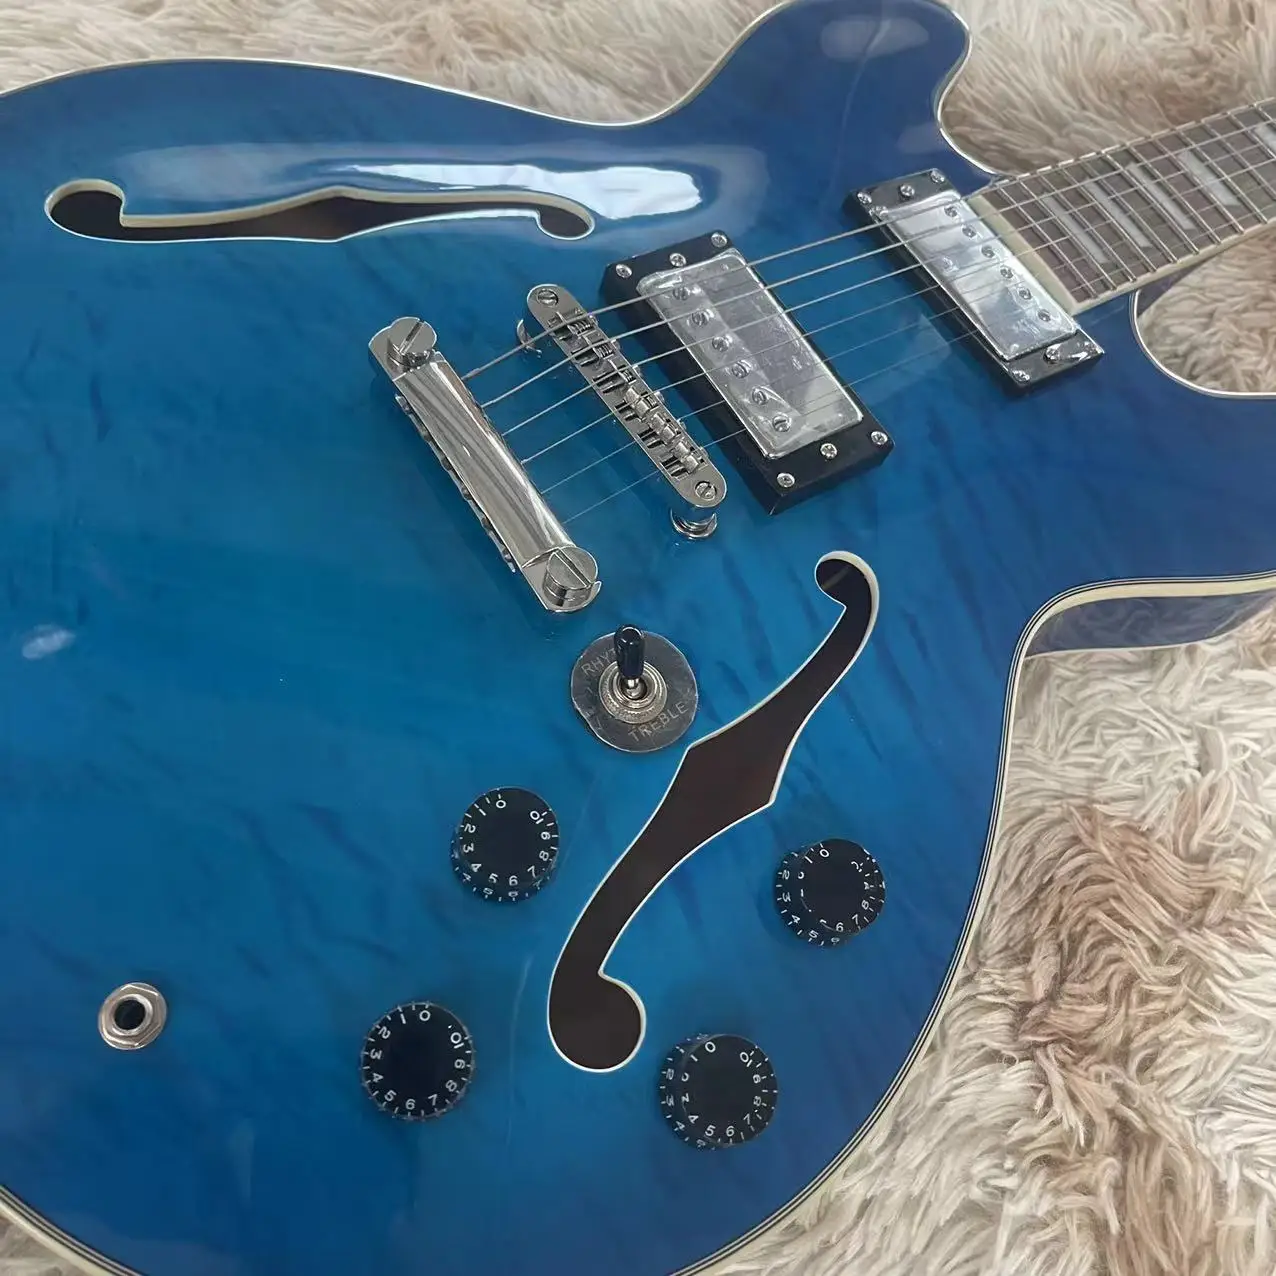 Вградена електрическа китара с отвор F, блестящ цвят blue tiger, звукосниматель LP, струнен бридж LP, сребърни аксесоари, в наличност, реален фактор